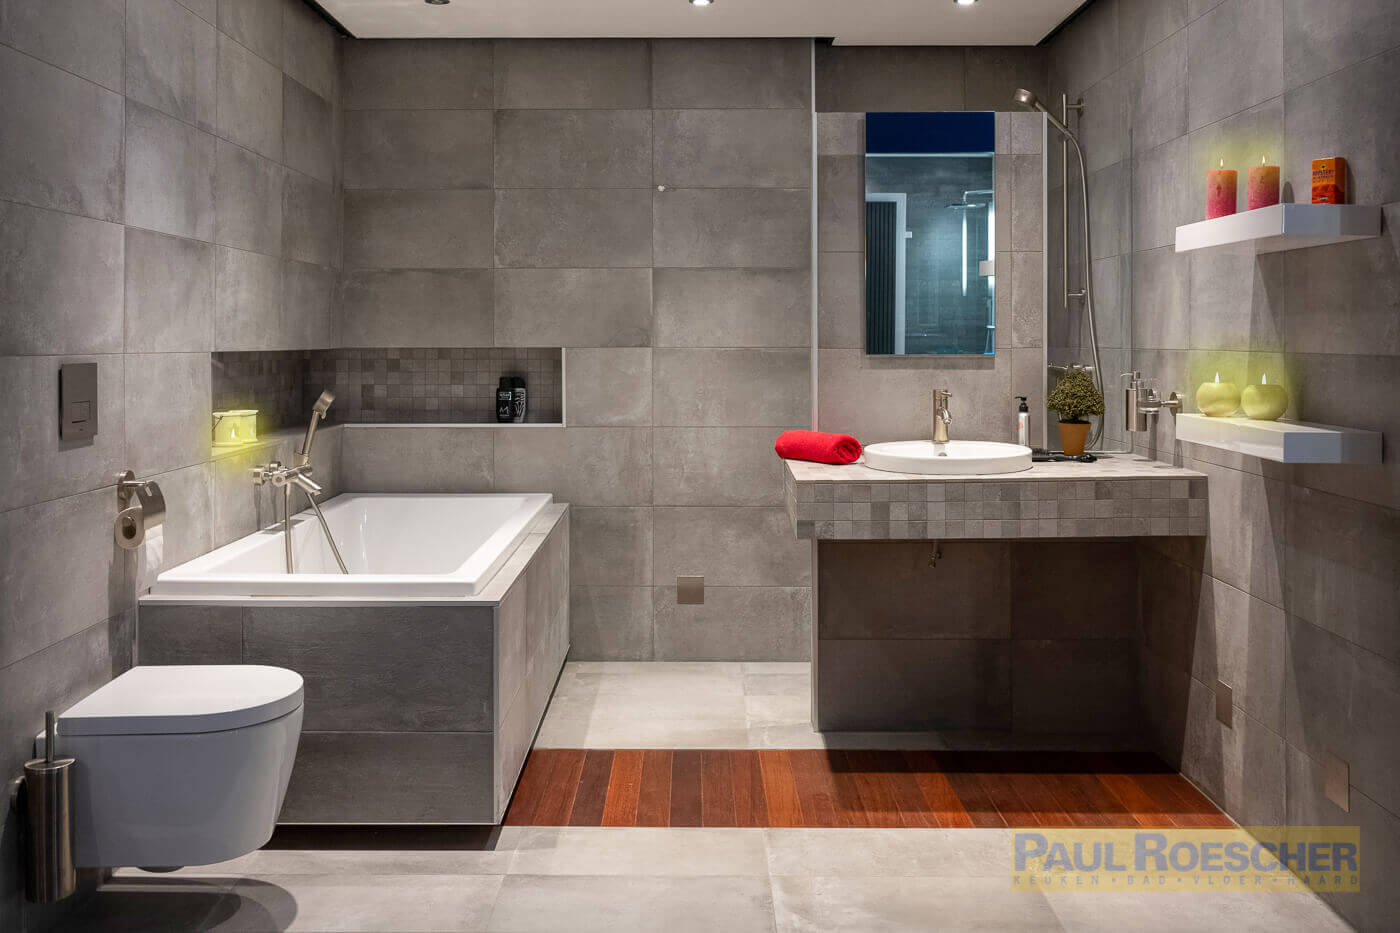 badkamer paul roescher met ligbad en grijze tegels